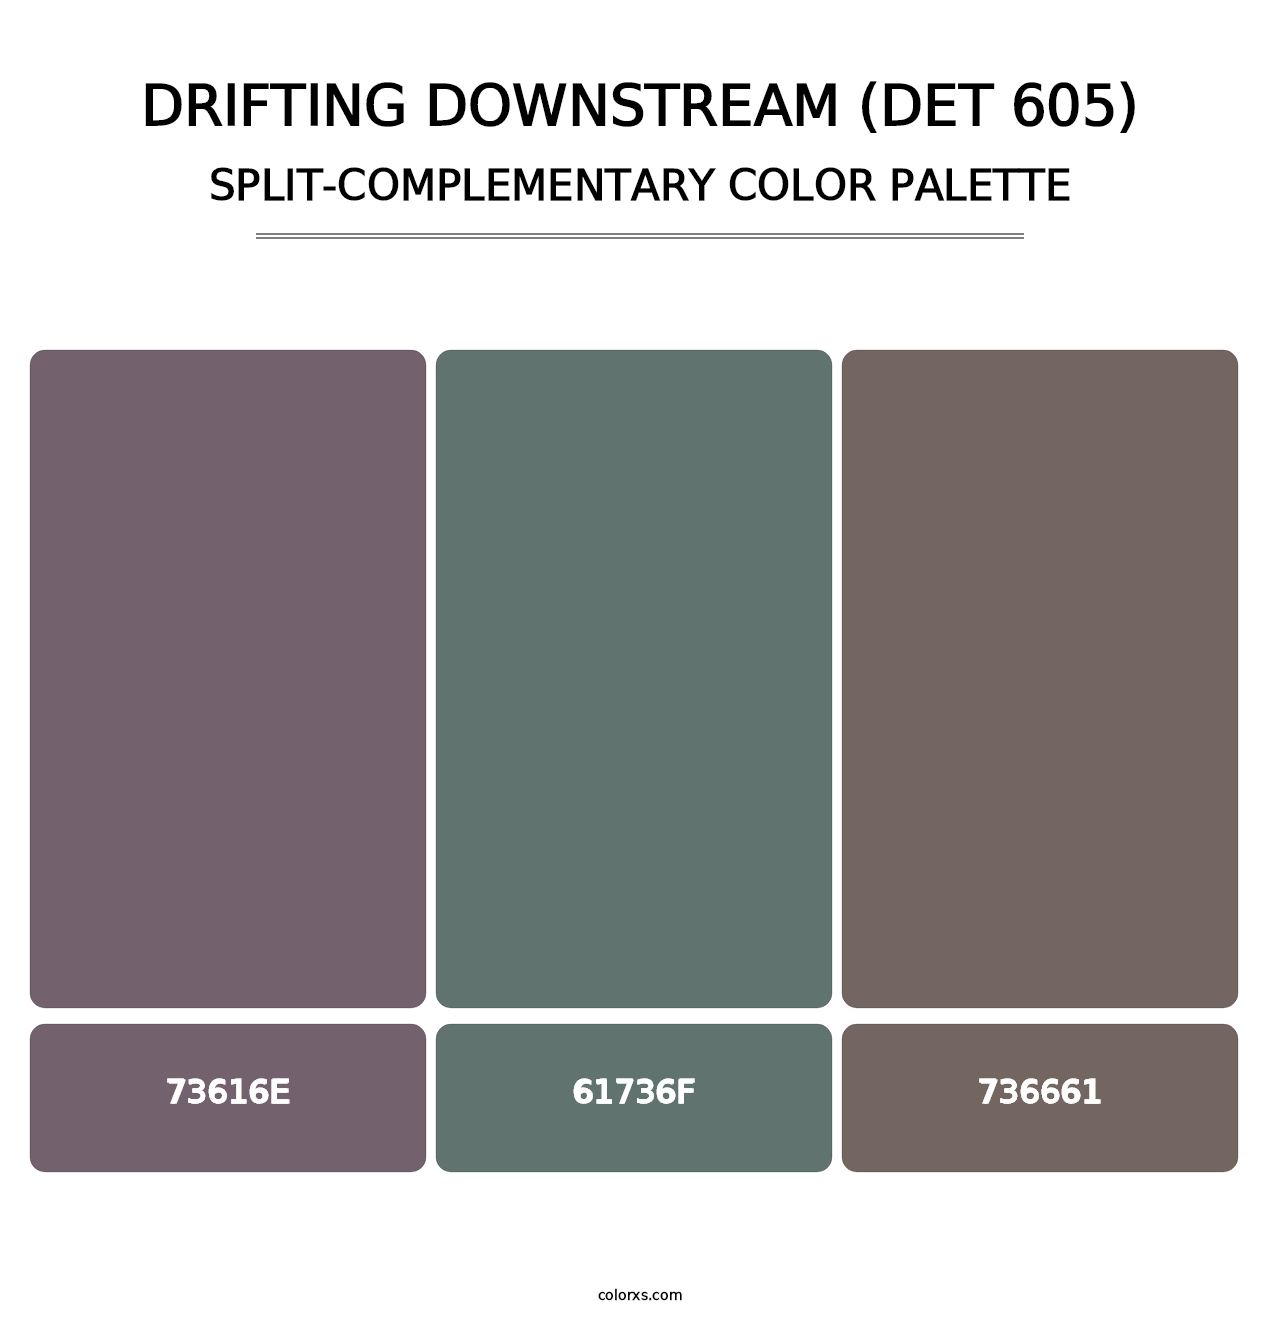 Drifting Downstream (DET 605) - Split-Complementary Color Palette